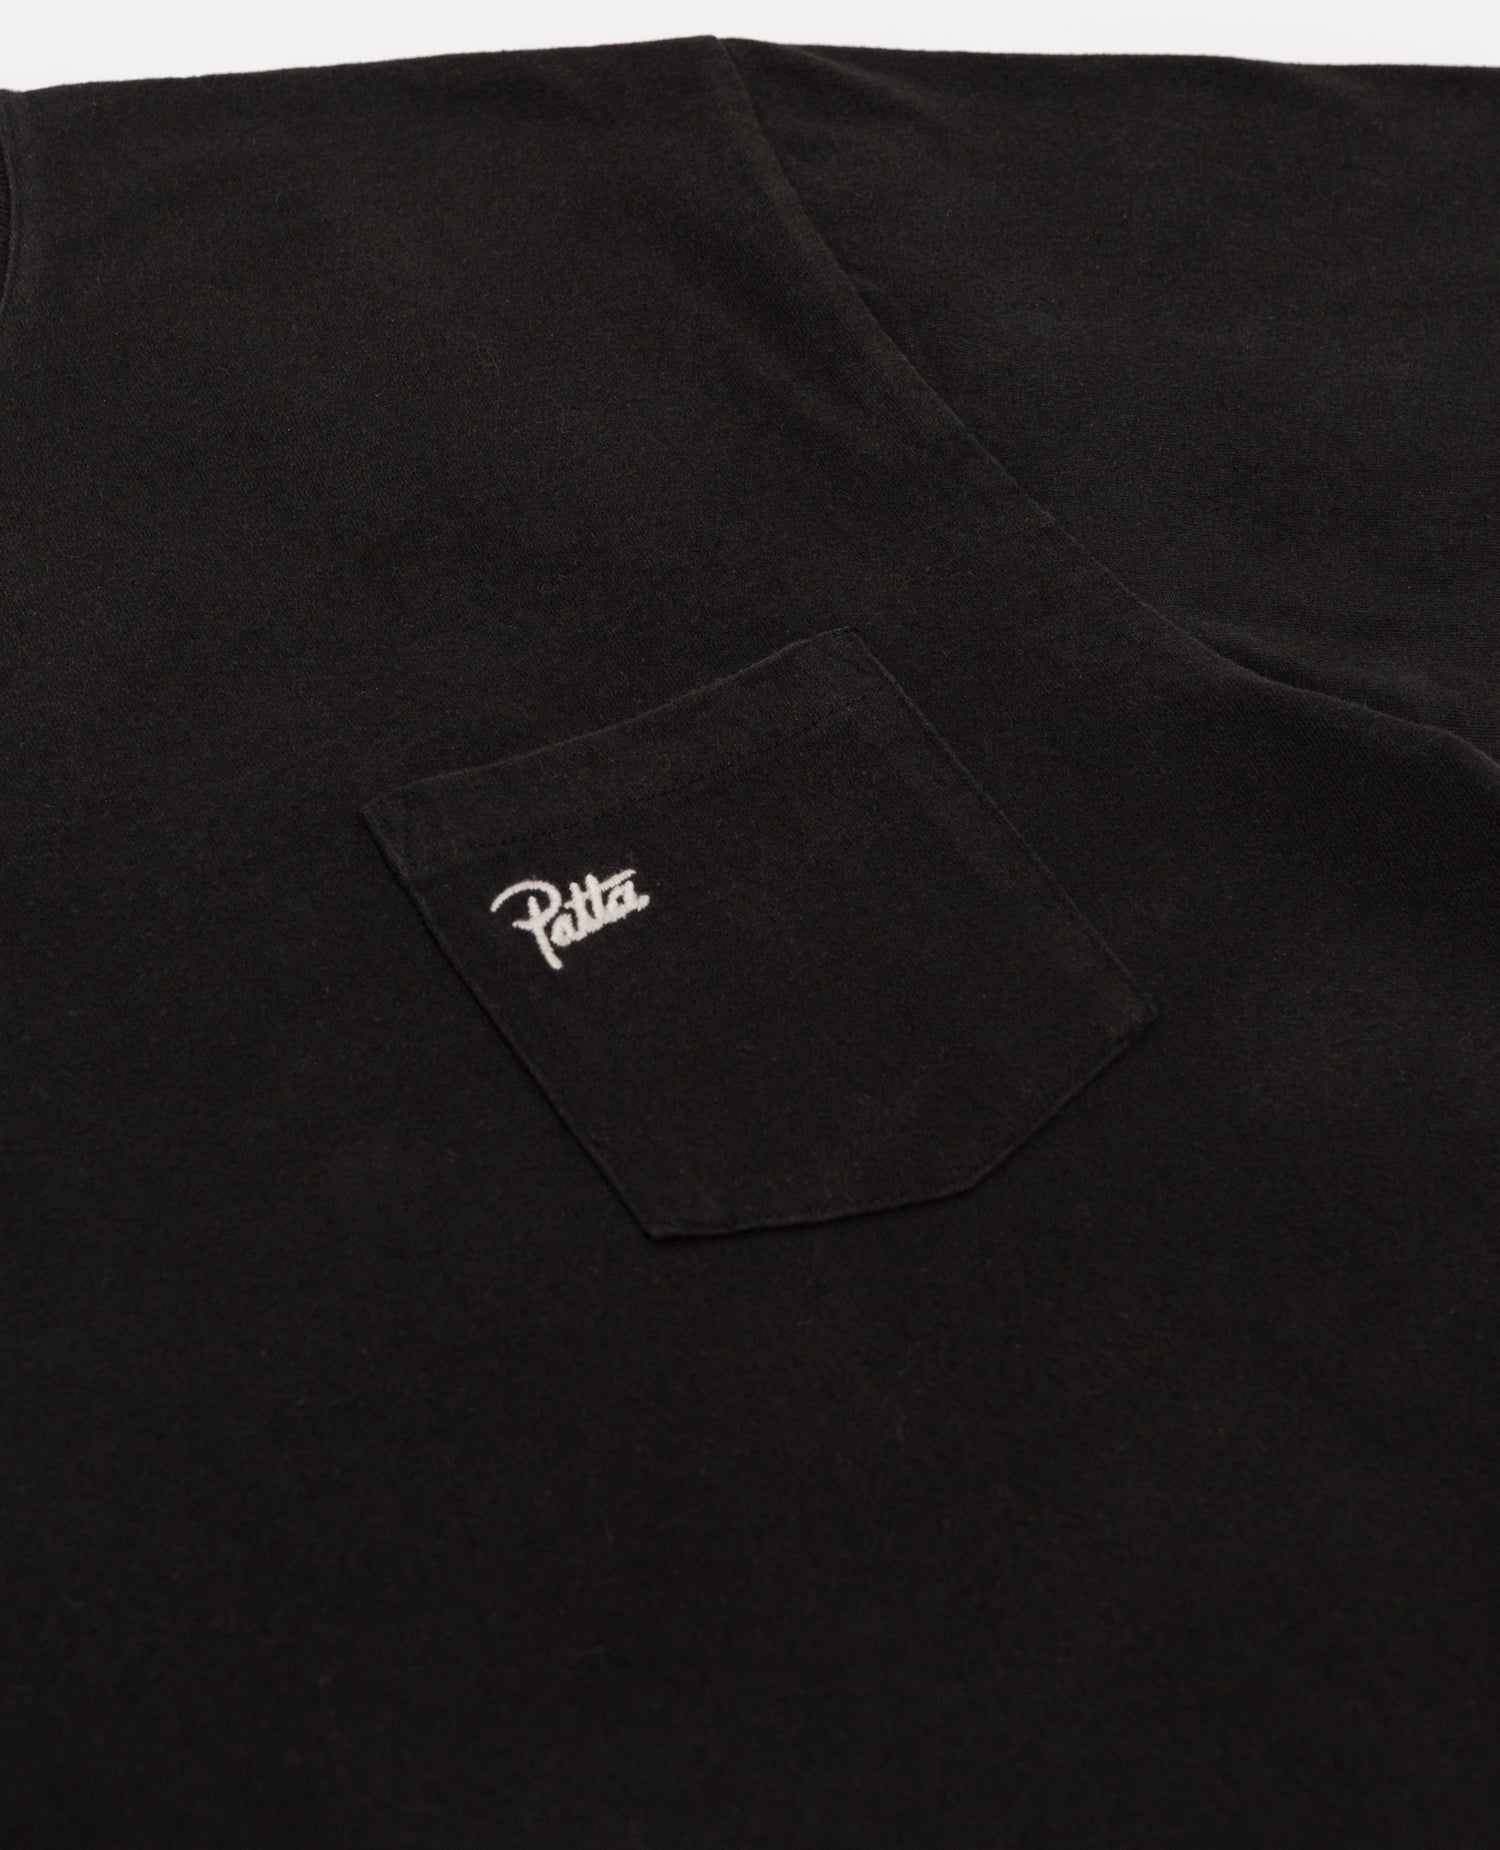 Patta Soundsystem x Tom Trago Washed Pocket T-Shirt (Black)